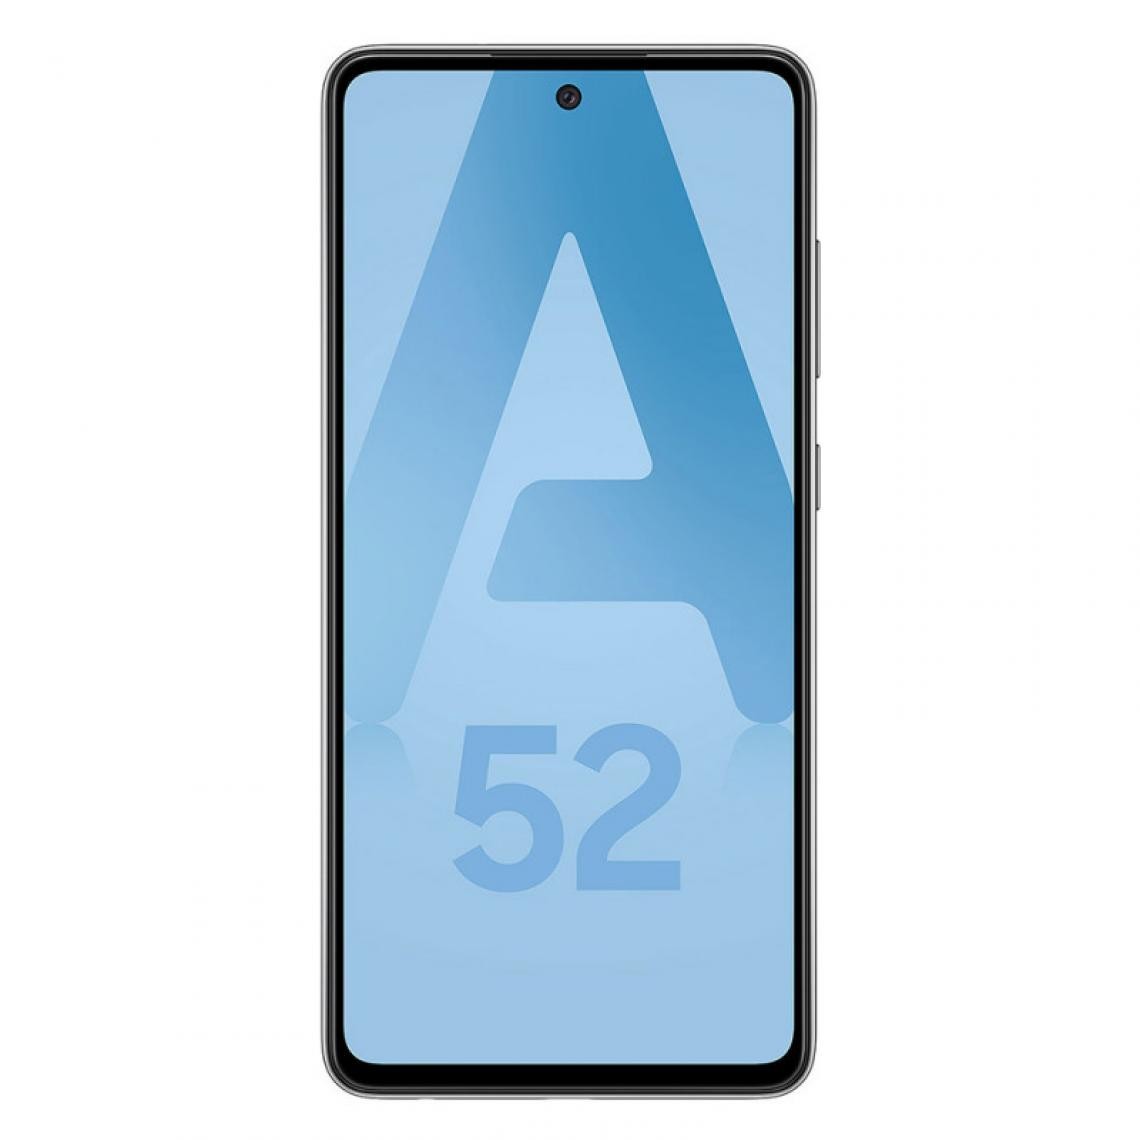 Samsung - Samsung Galaxy A52 (Double Sim - 128 Go, 6 Go RAM) Noir - Smartphone Android